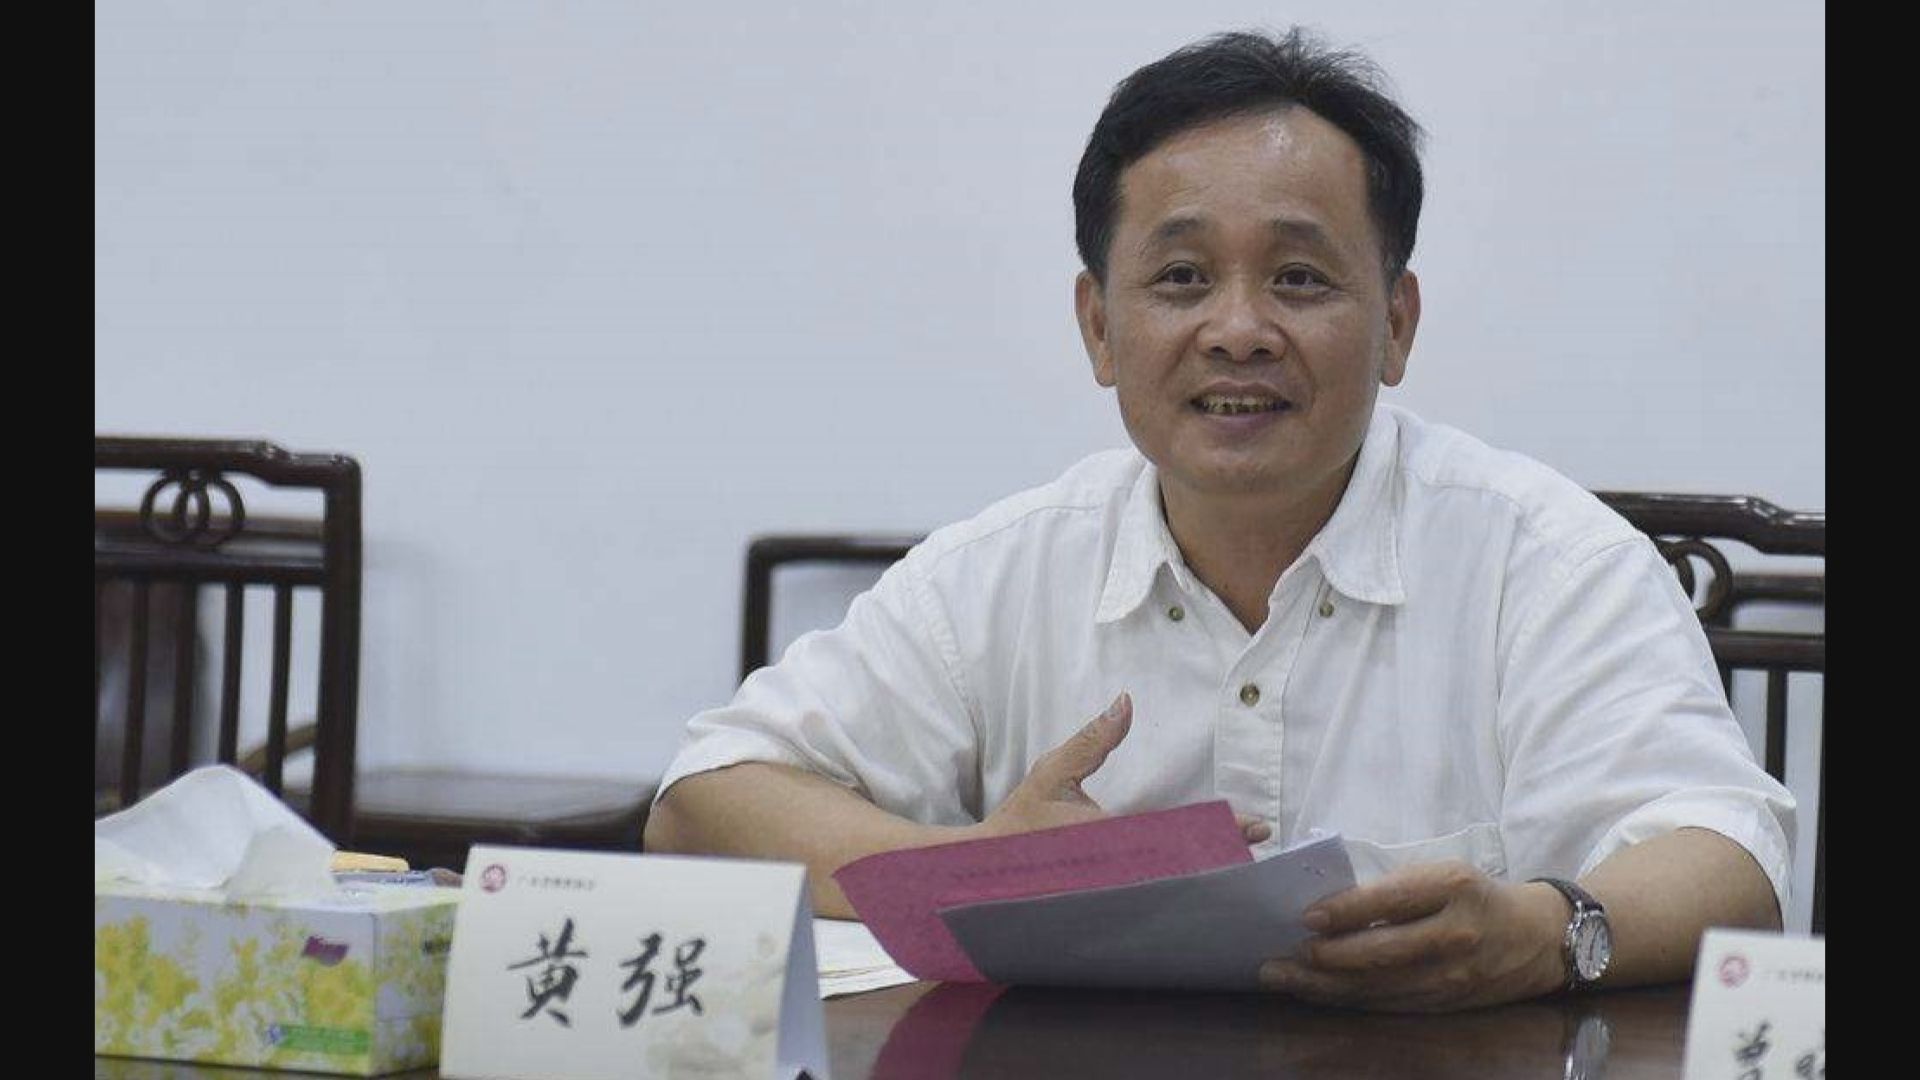 廣東省委統戰部原副部長黃強被起訴